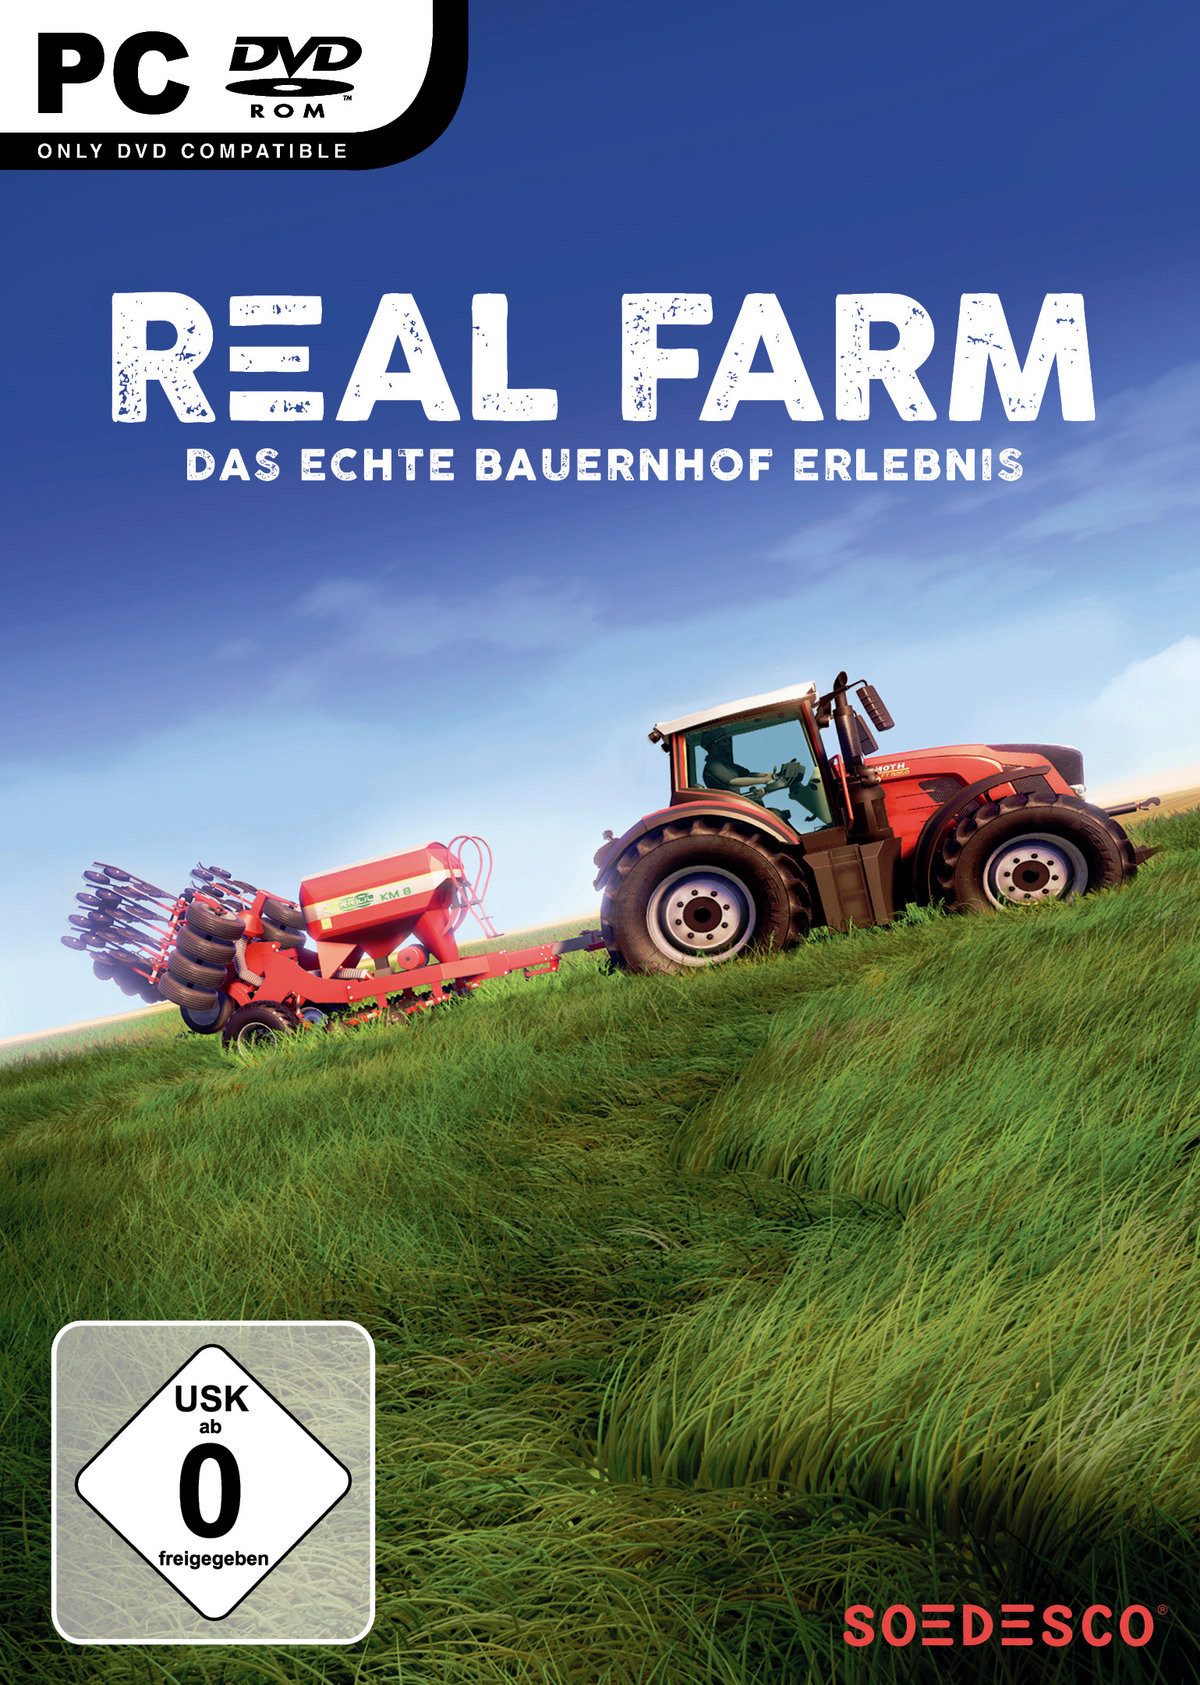 Real Farm Sim PC